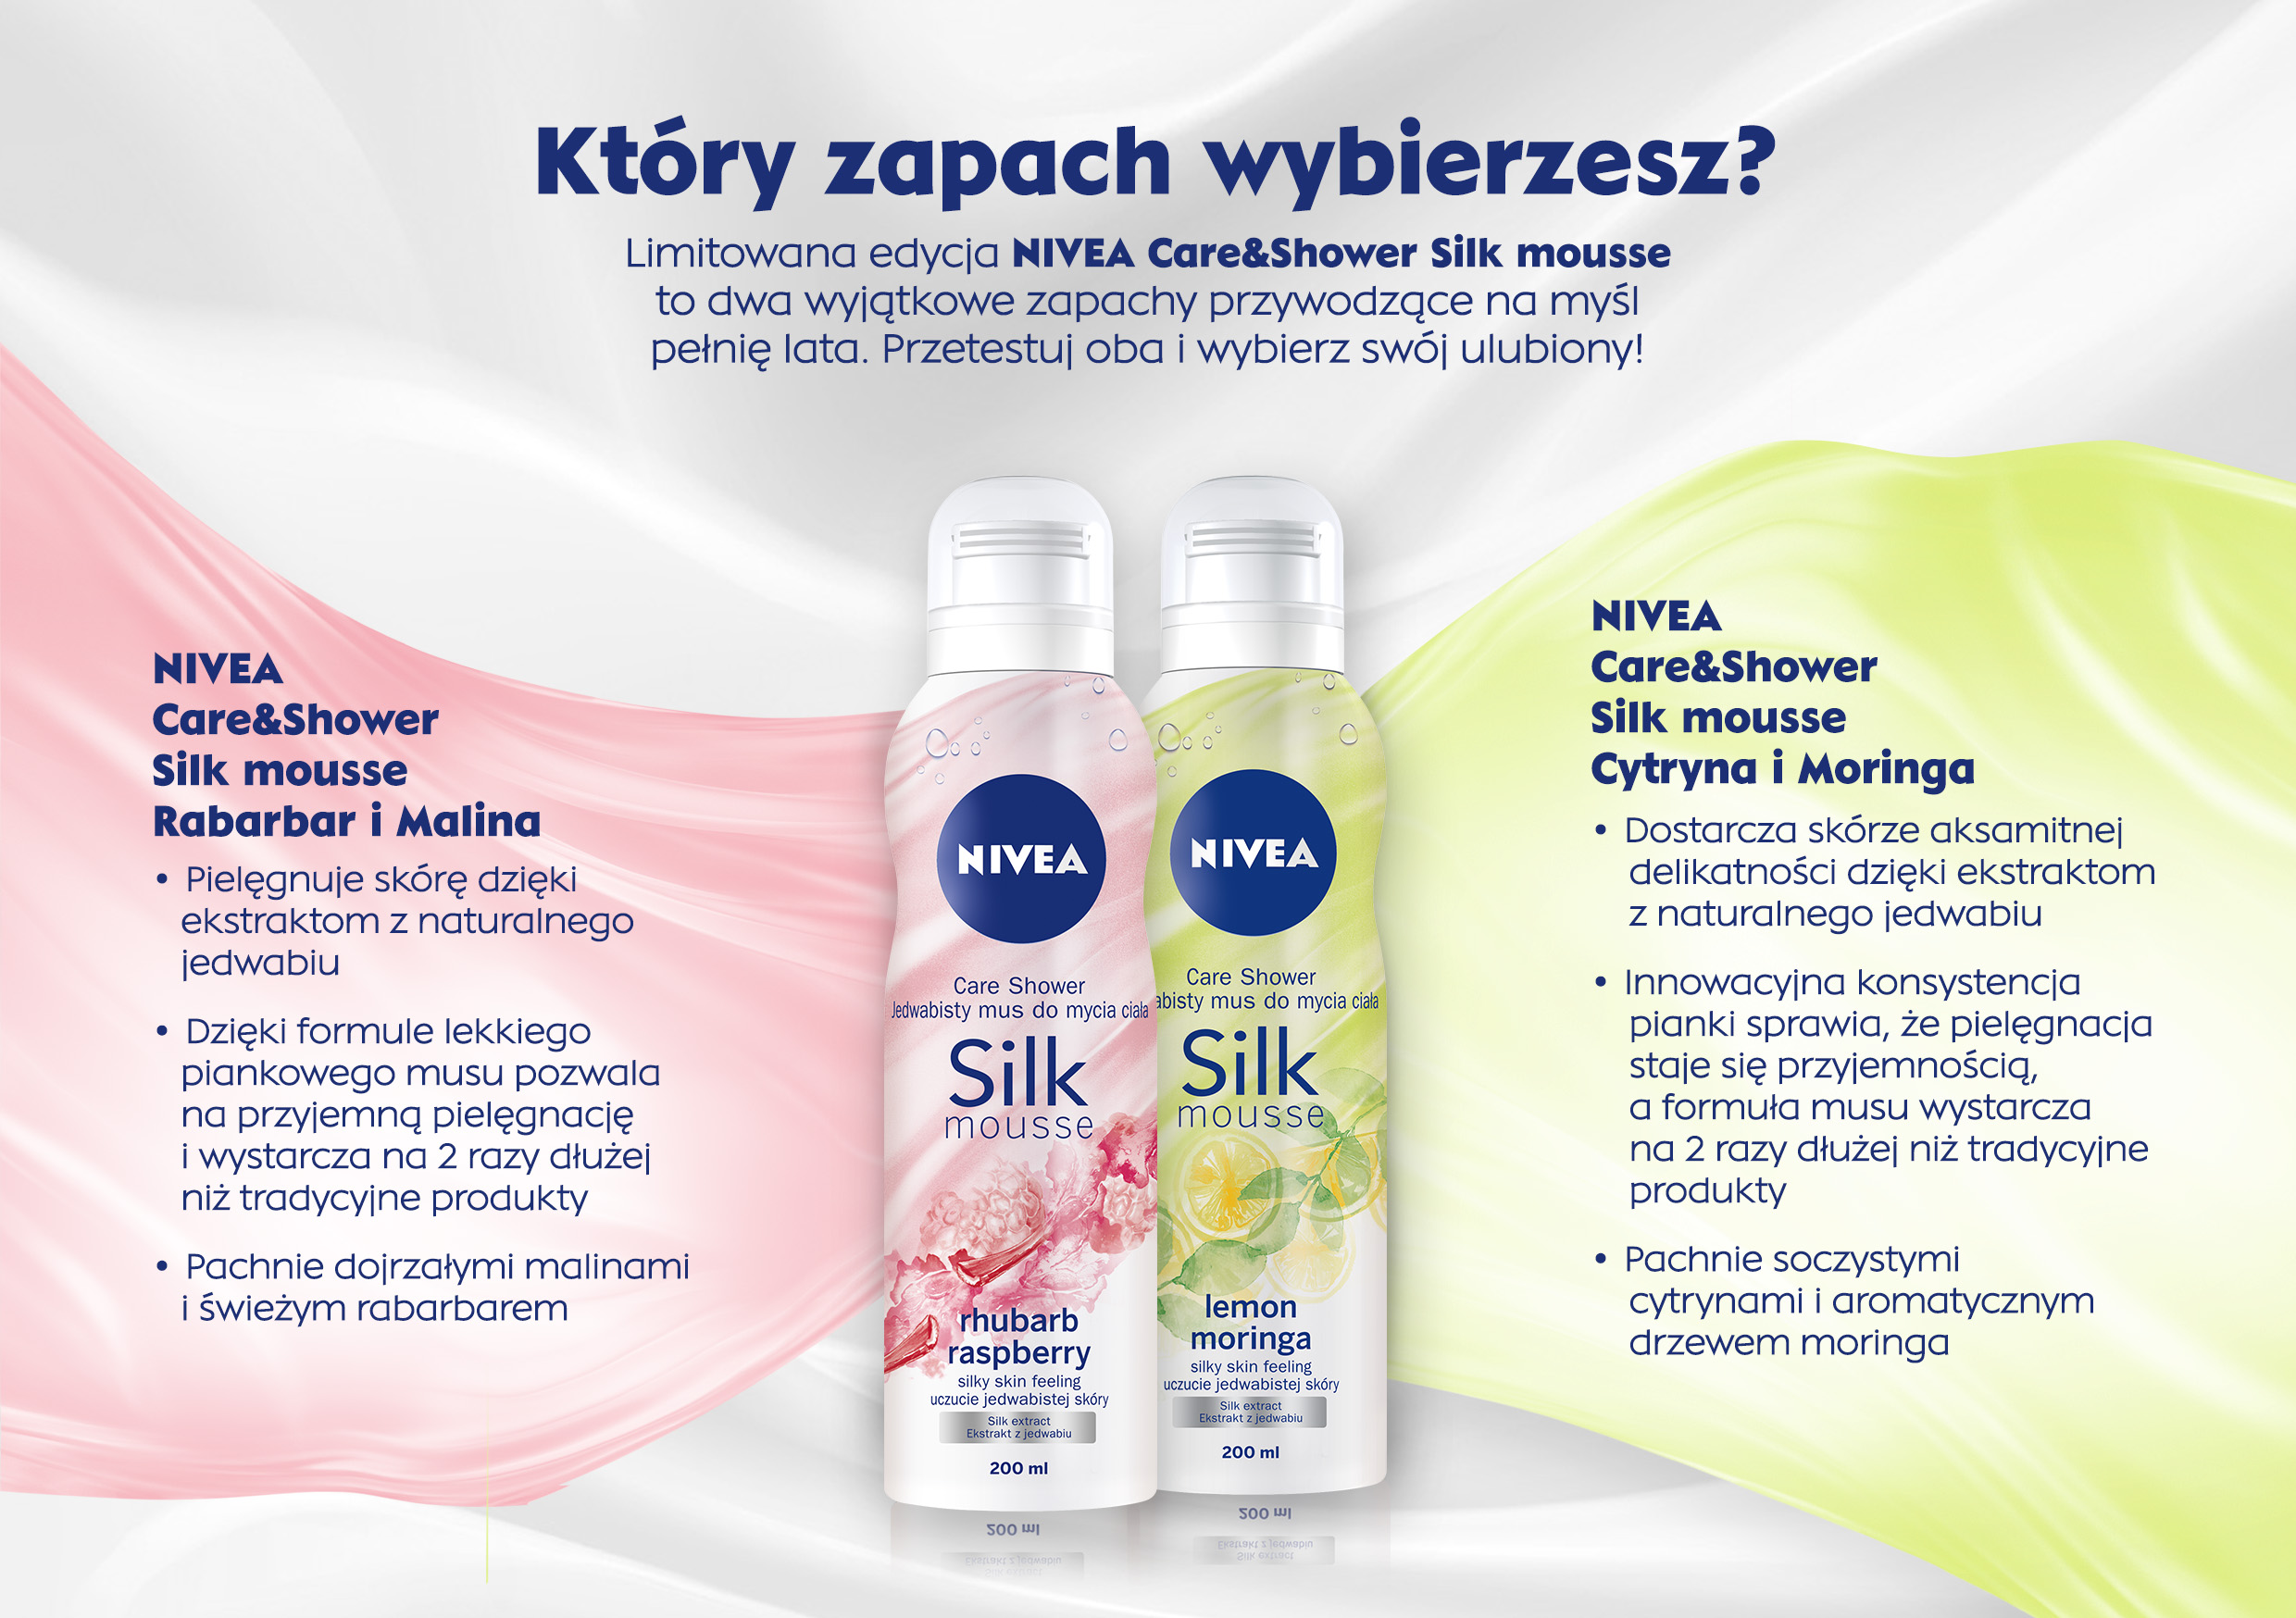 NIVEA Care&Shower Silk mousse_infografika_2